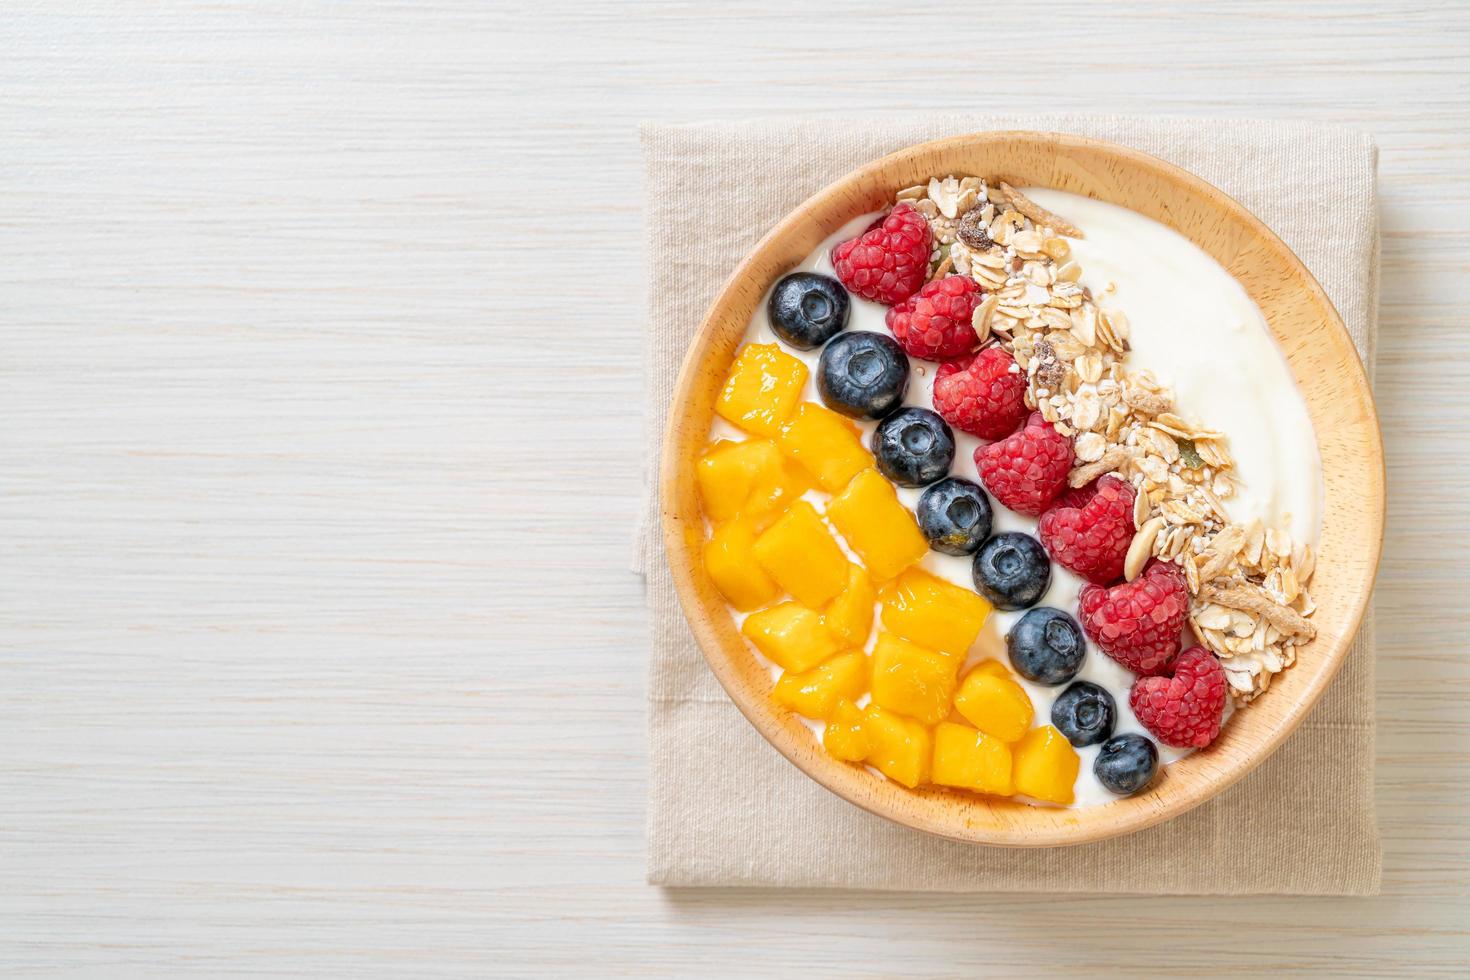 zelfgemaakte yoghurtkom met framboos, bosbes, mango en granola - healthy food style foto